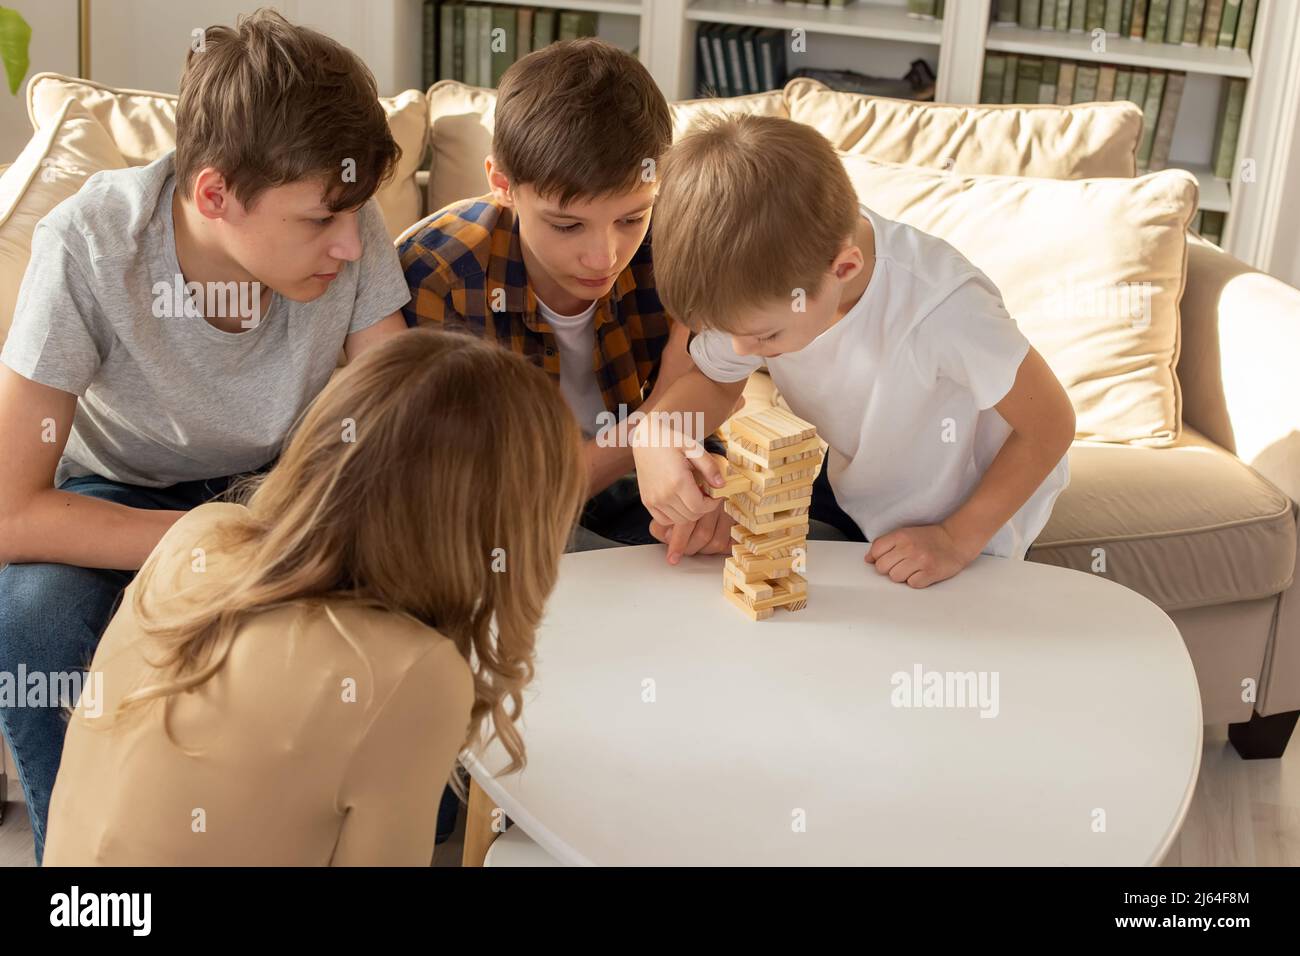 Una donna e tre ragazzi stanno giocando con entusiasmo un gioco da tavolo fatto di blocchi rettangolari di legno Foto Stock